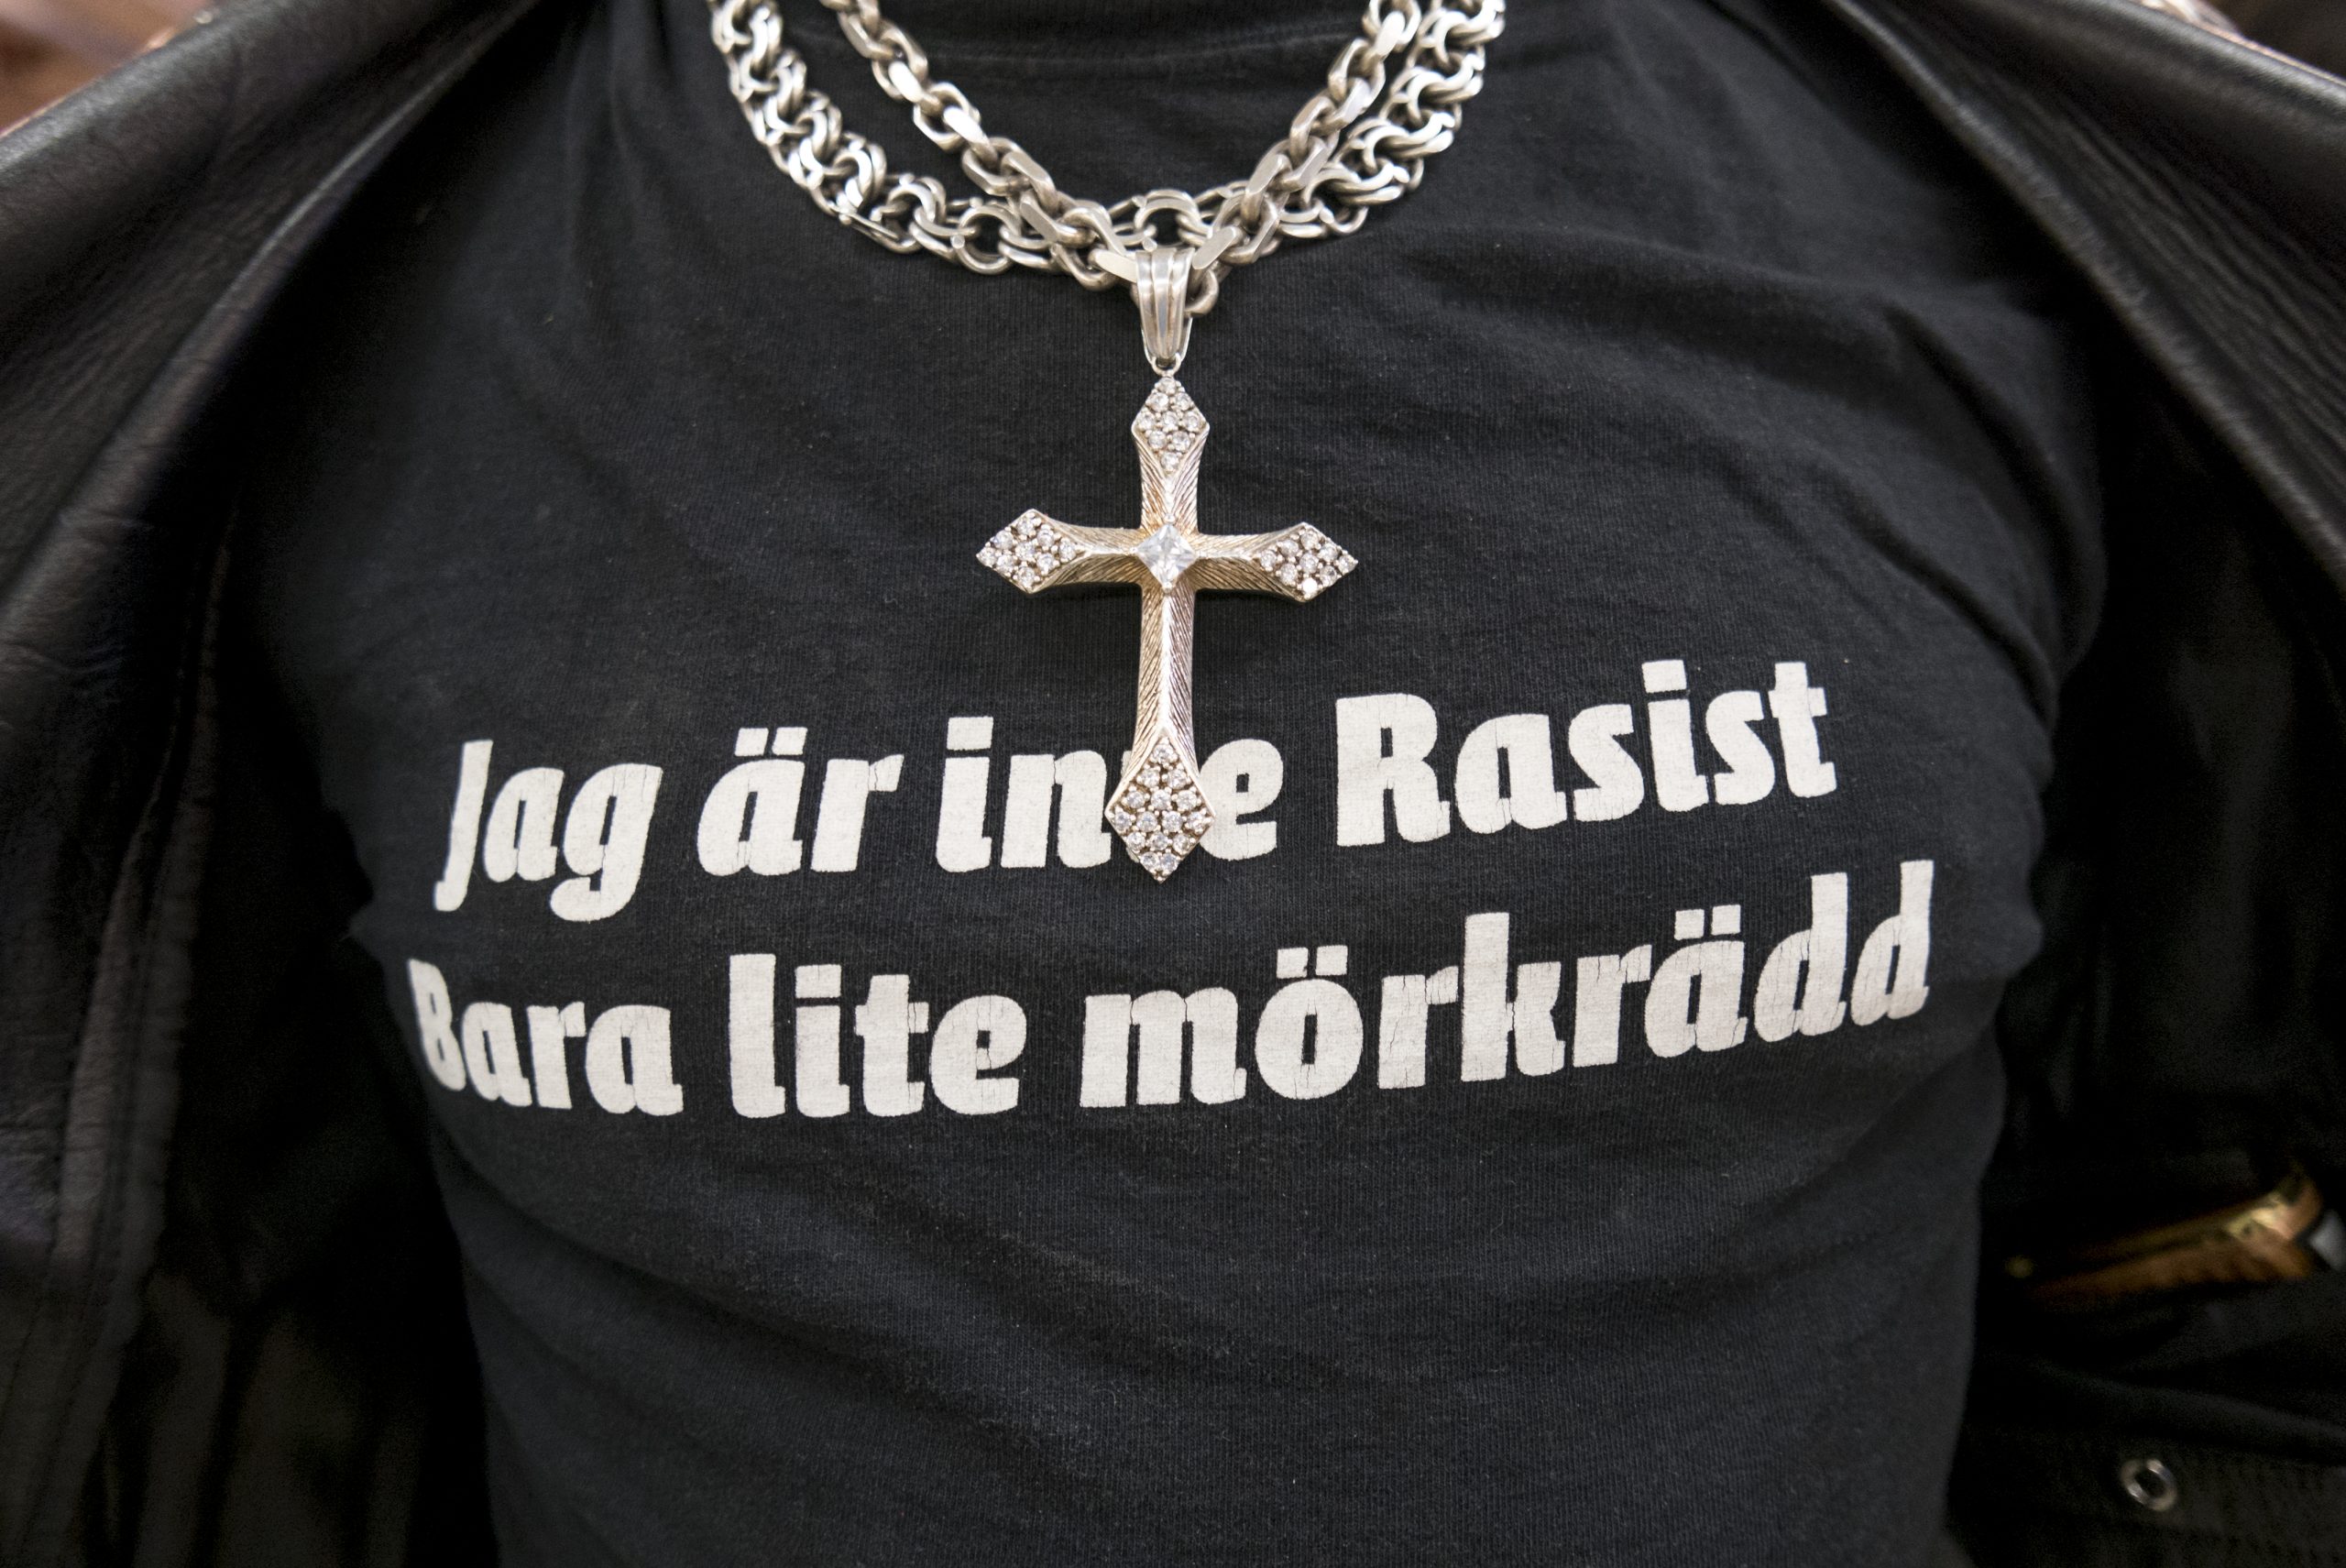 En bringa av en T-shirt med texten "Jag är inte Rasist, bara lite mörkrädd".